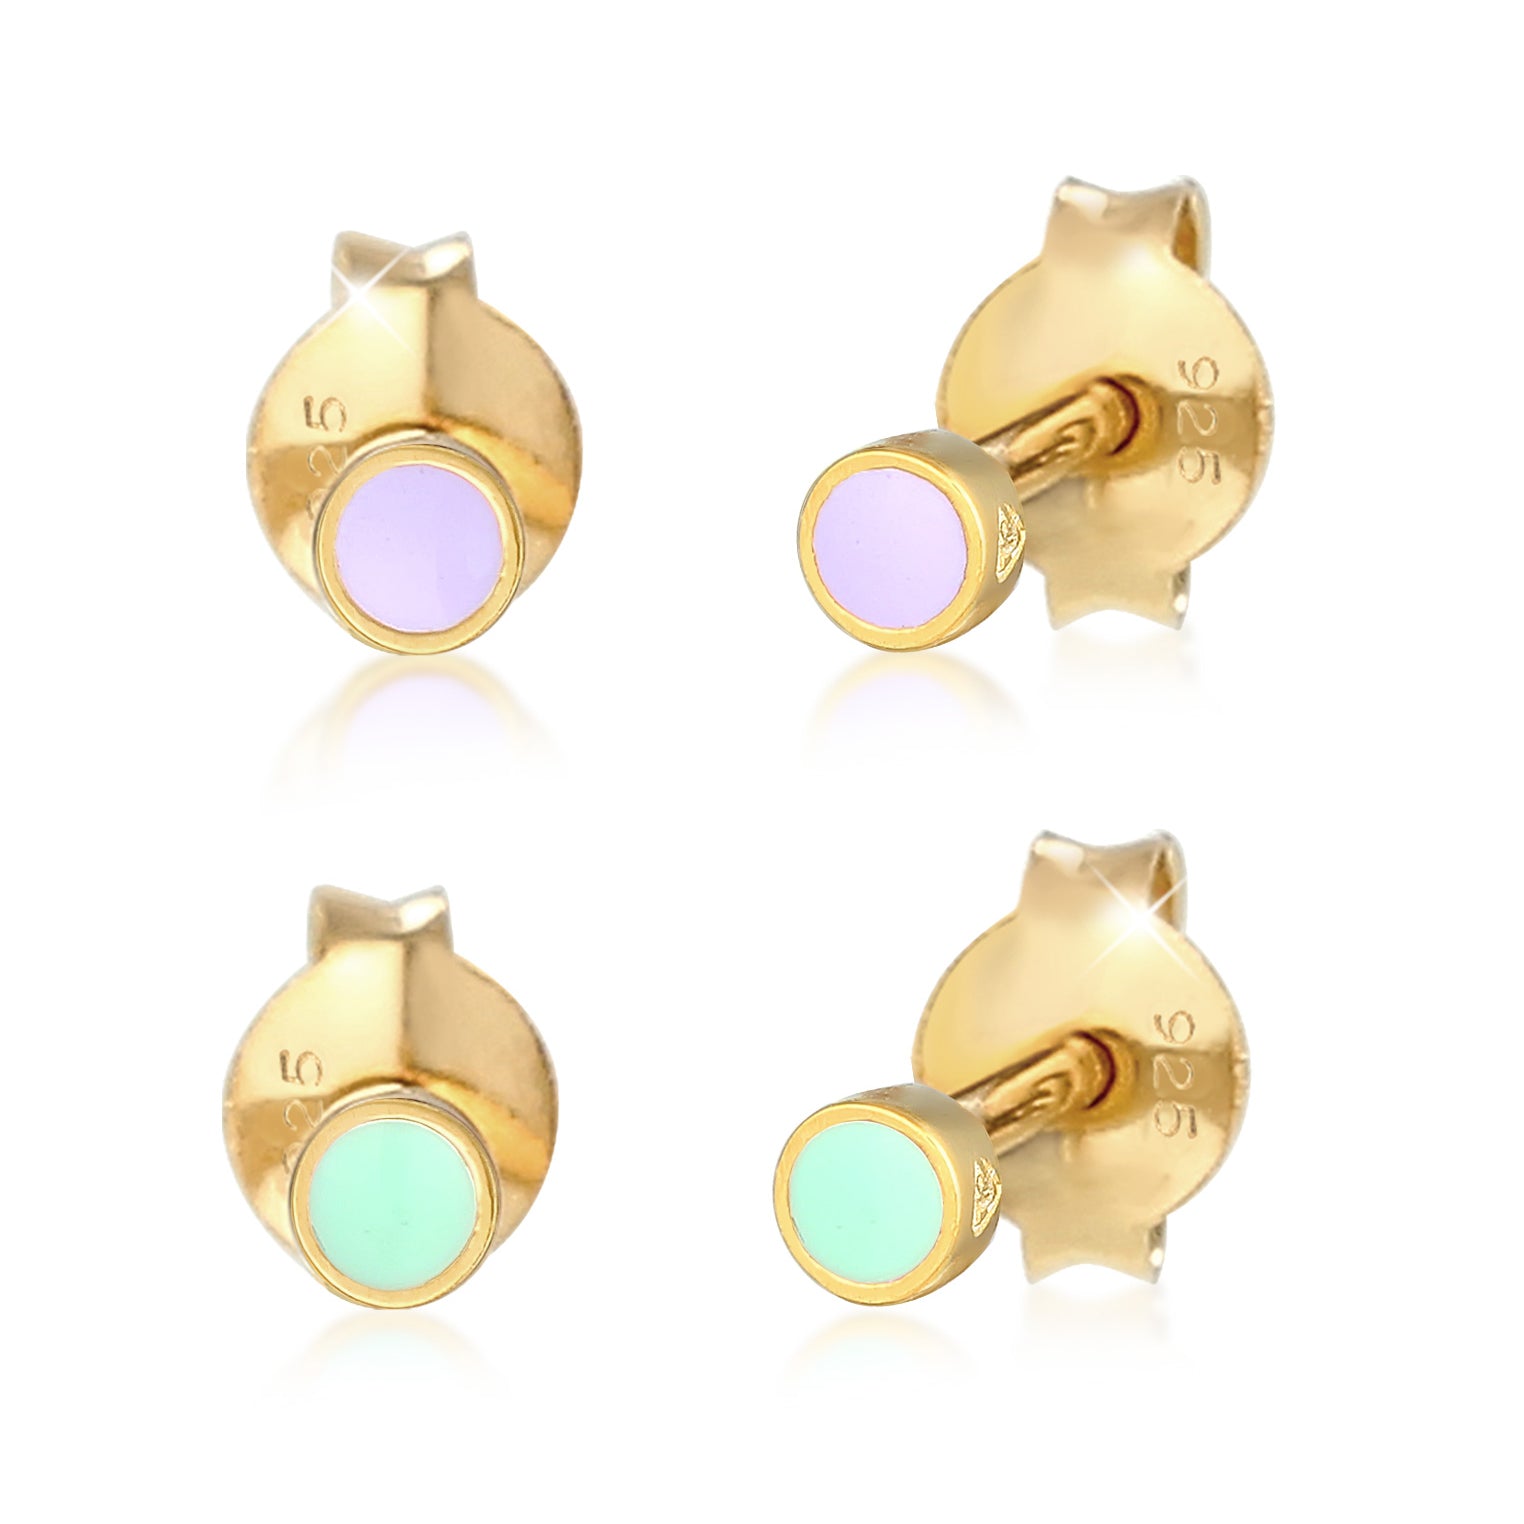 Ohrringe-Ohrschmuck in | – Seite Elli 11 Elli Varianten bei vielen – Jewelry online